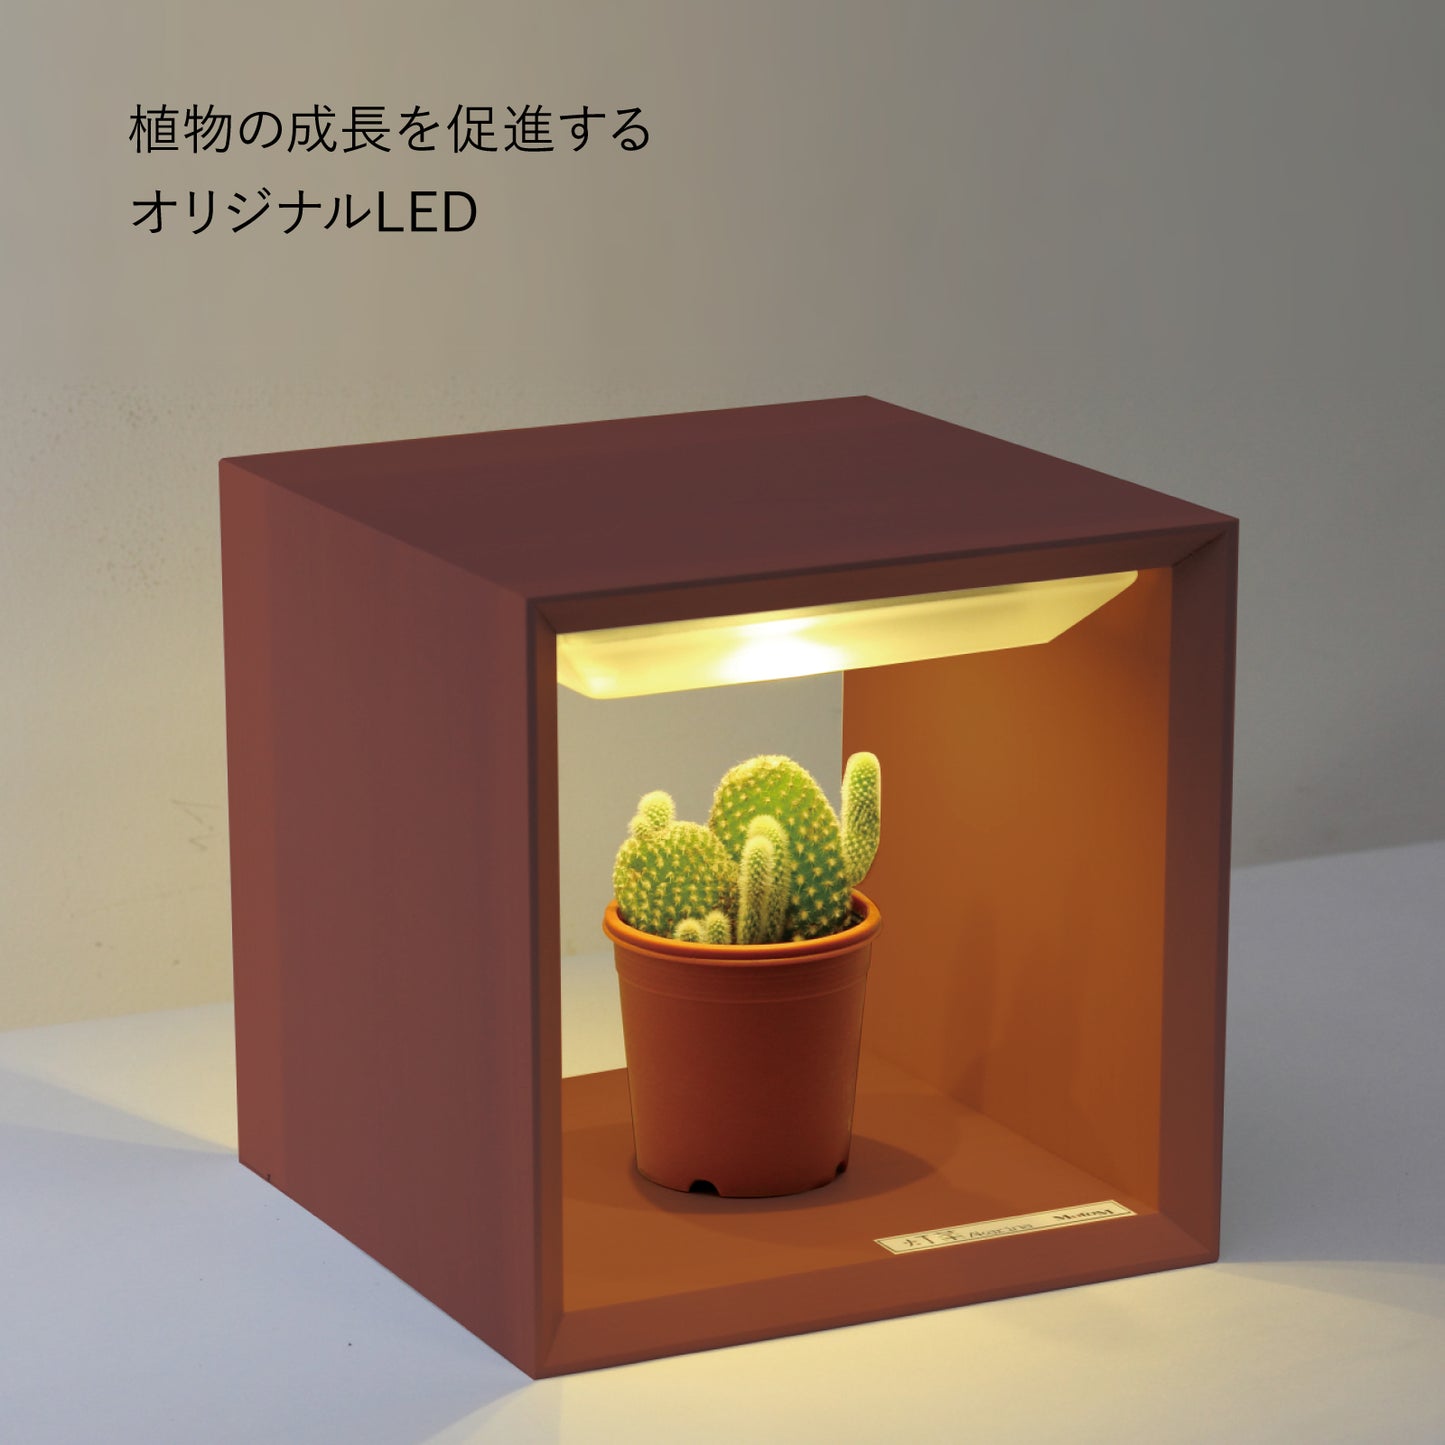 LED植物育成ライト(小) Akarina09 室内栽培  木製 MAI09【梱包80サイズ】